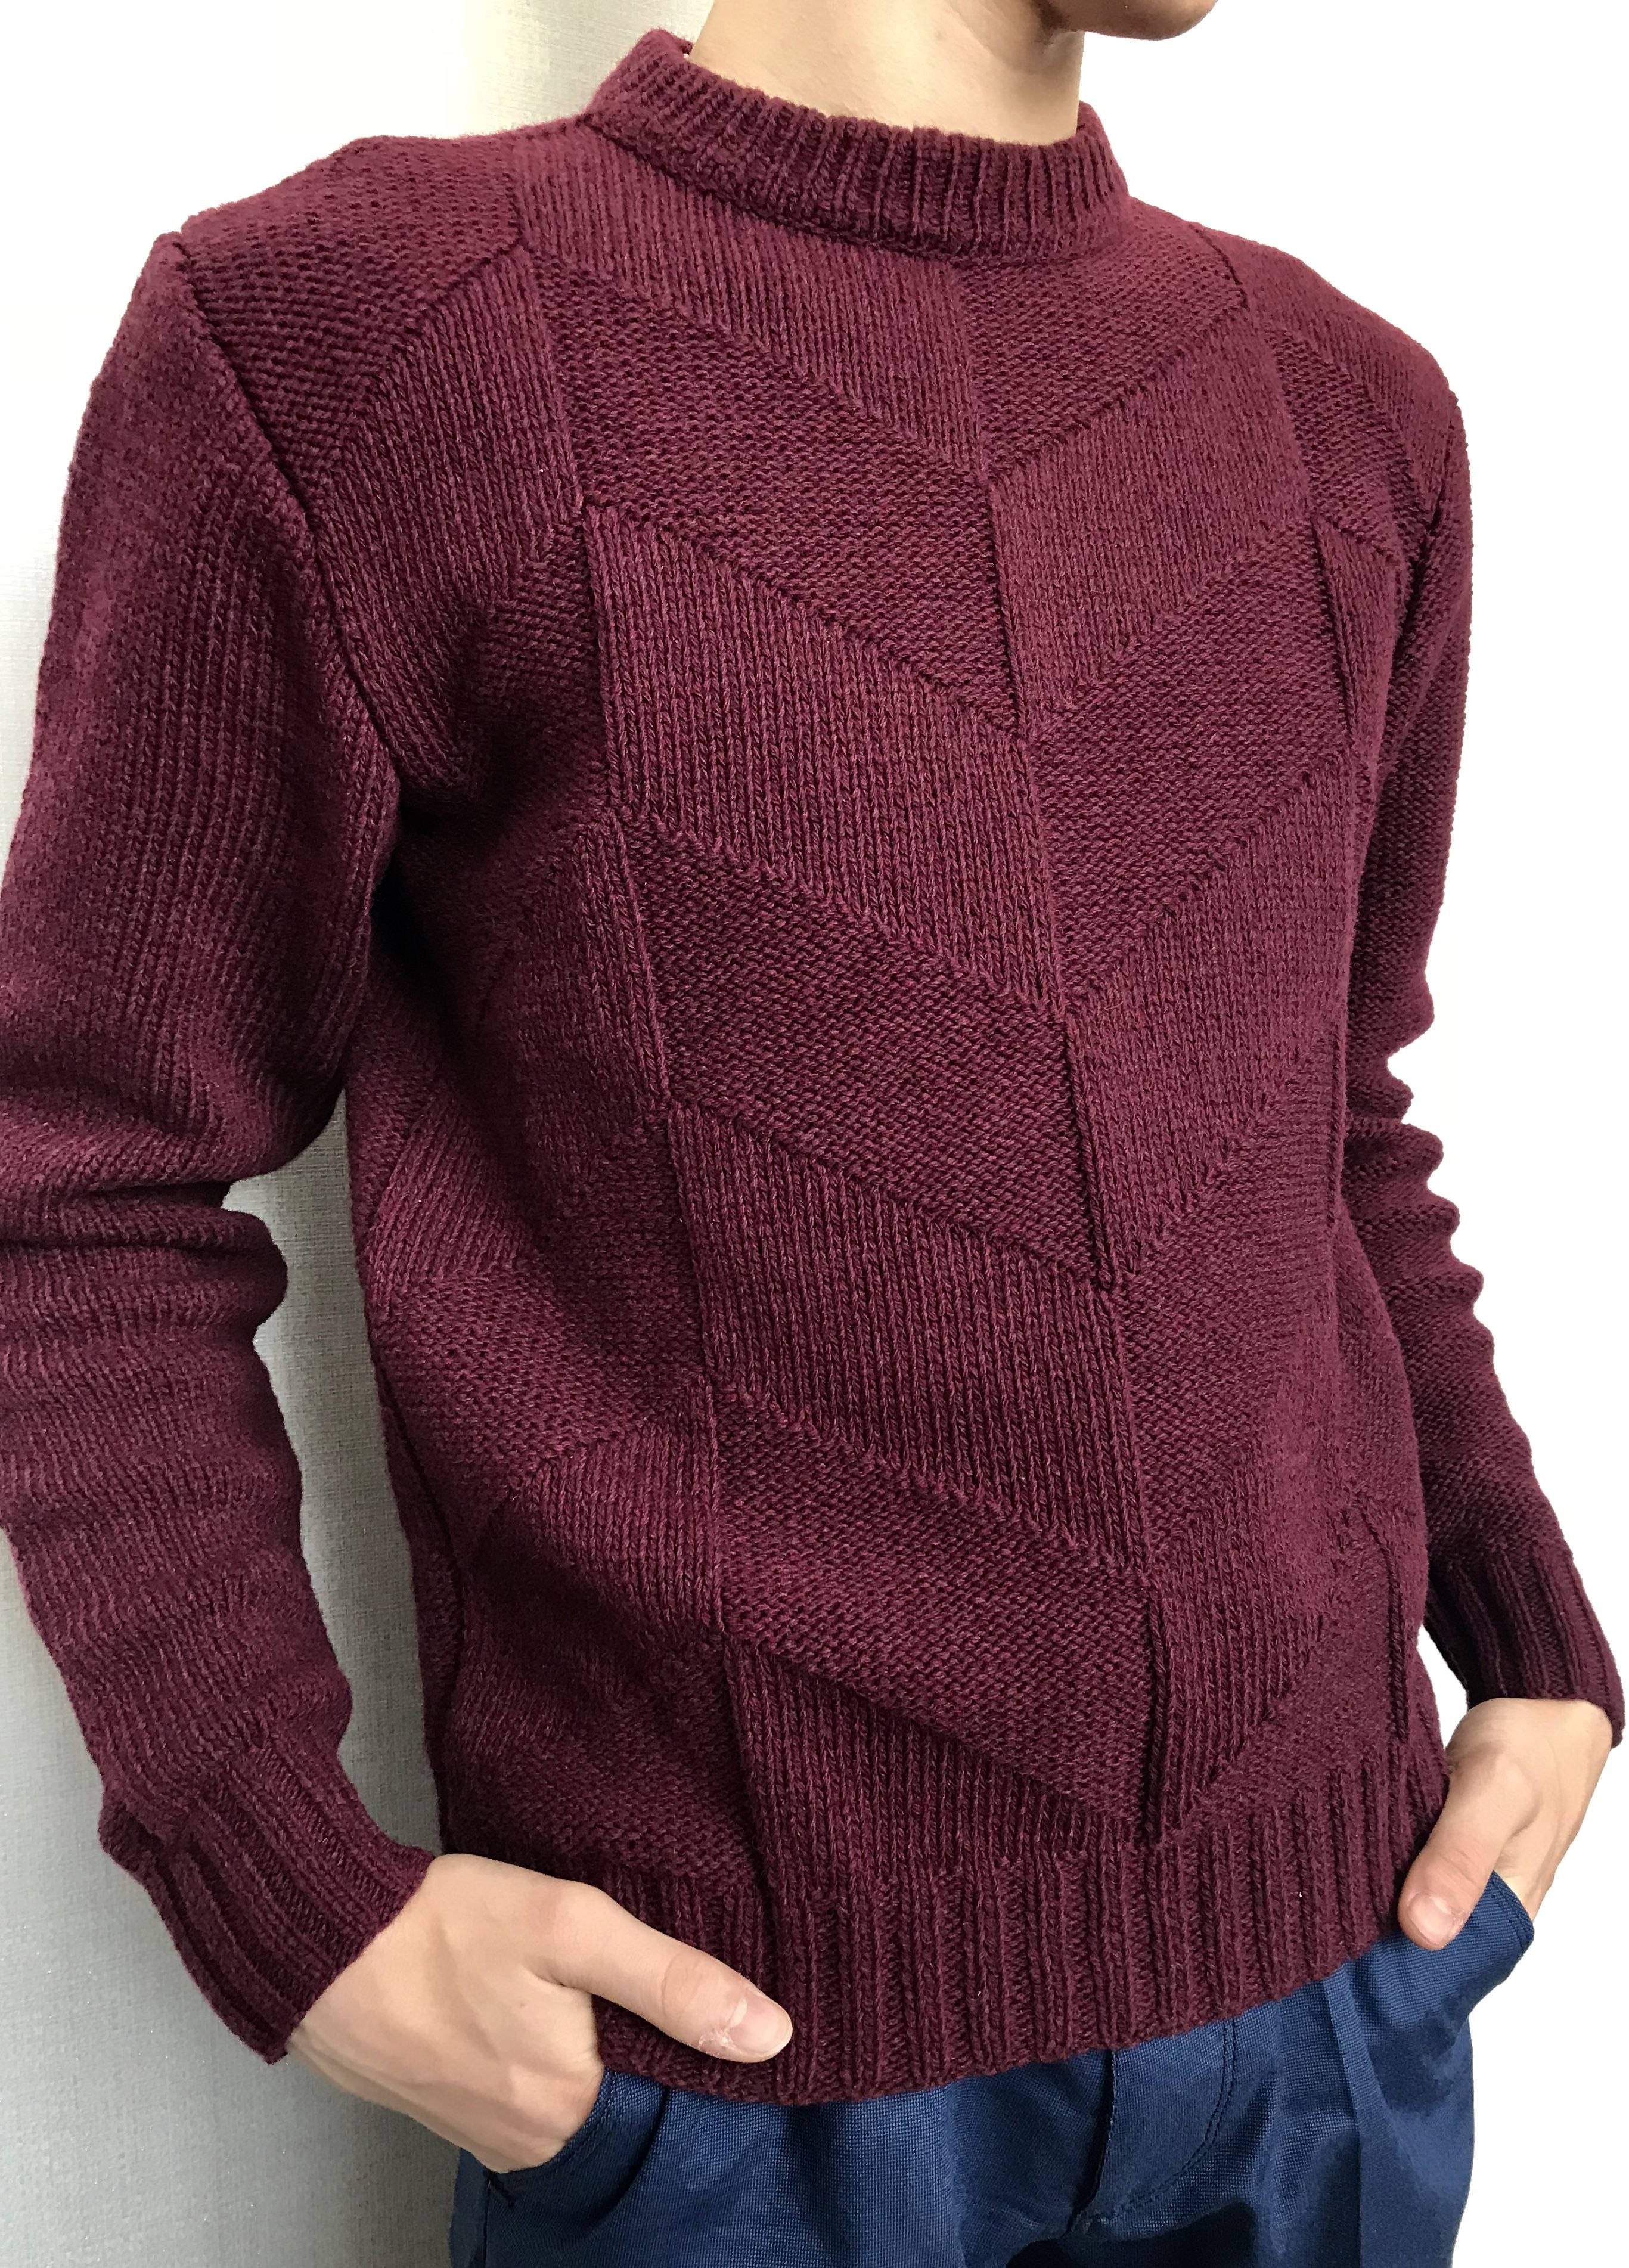 Бордовый вязаный свитер мужской